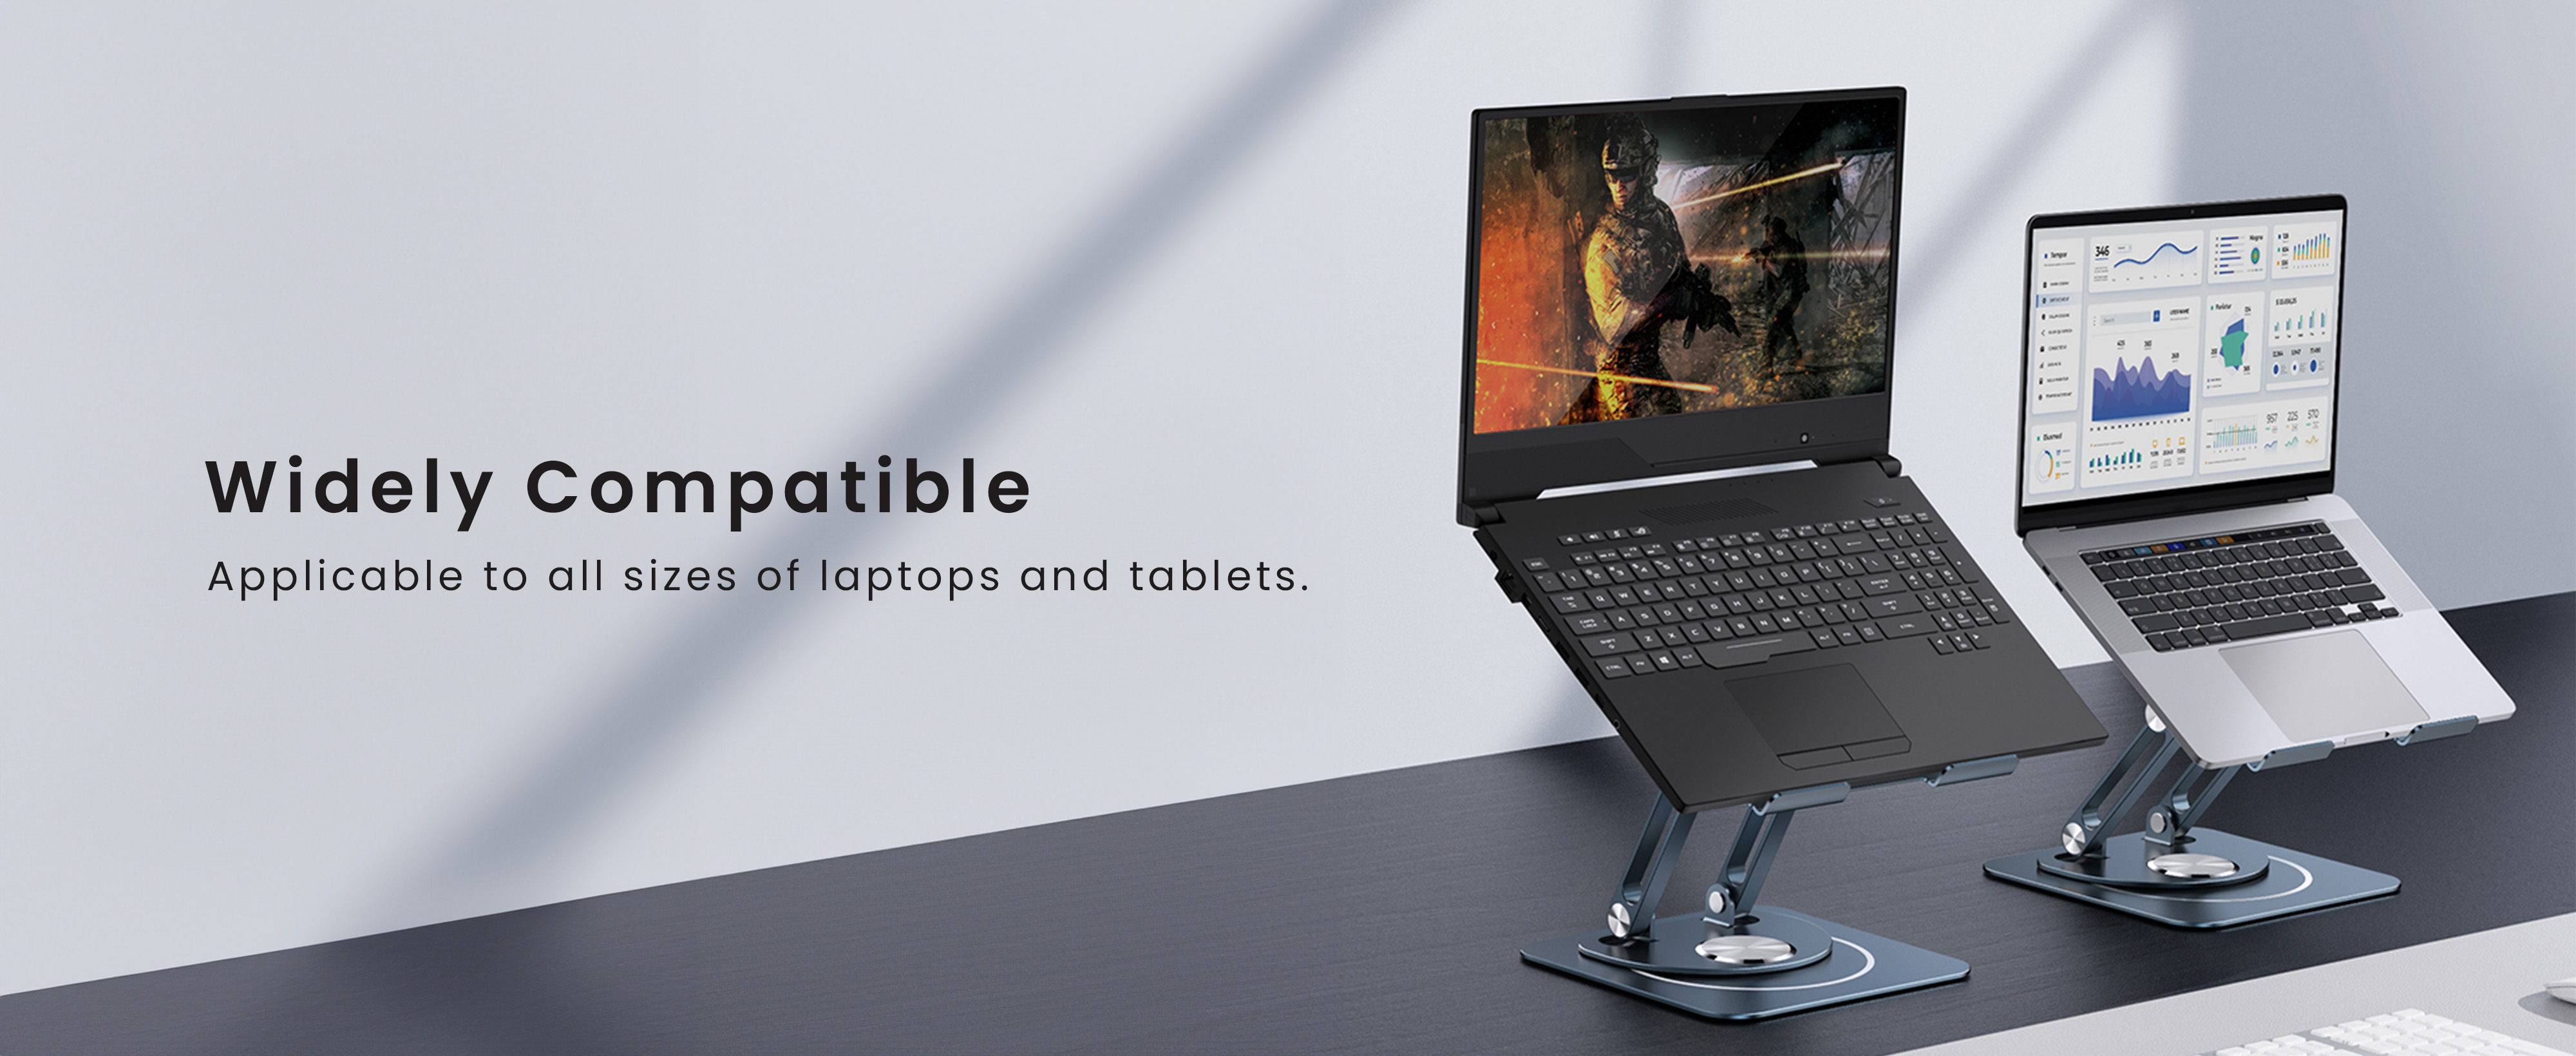 حامل Baseus قابل للدوران 360 درجة وقابل للطي لأجهزة الكمبيوتر المحمول وأجهزة iPad اللوحية (إصدار ثلاثي الطي)